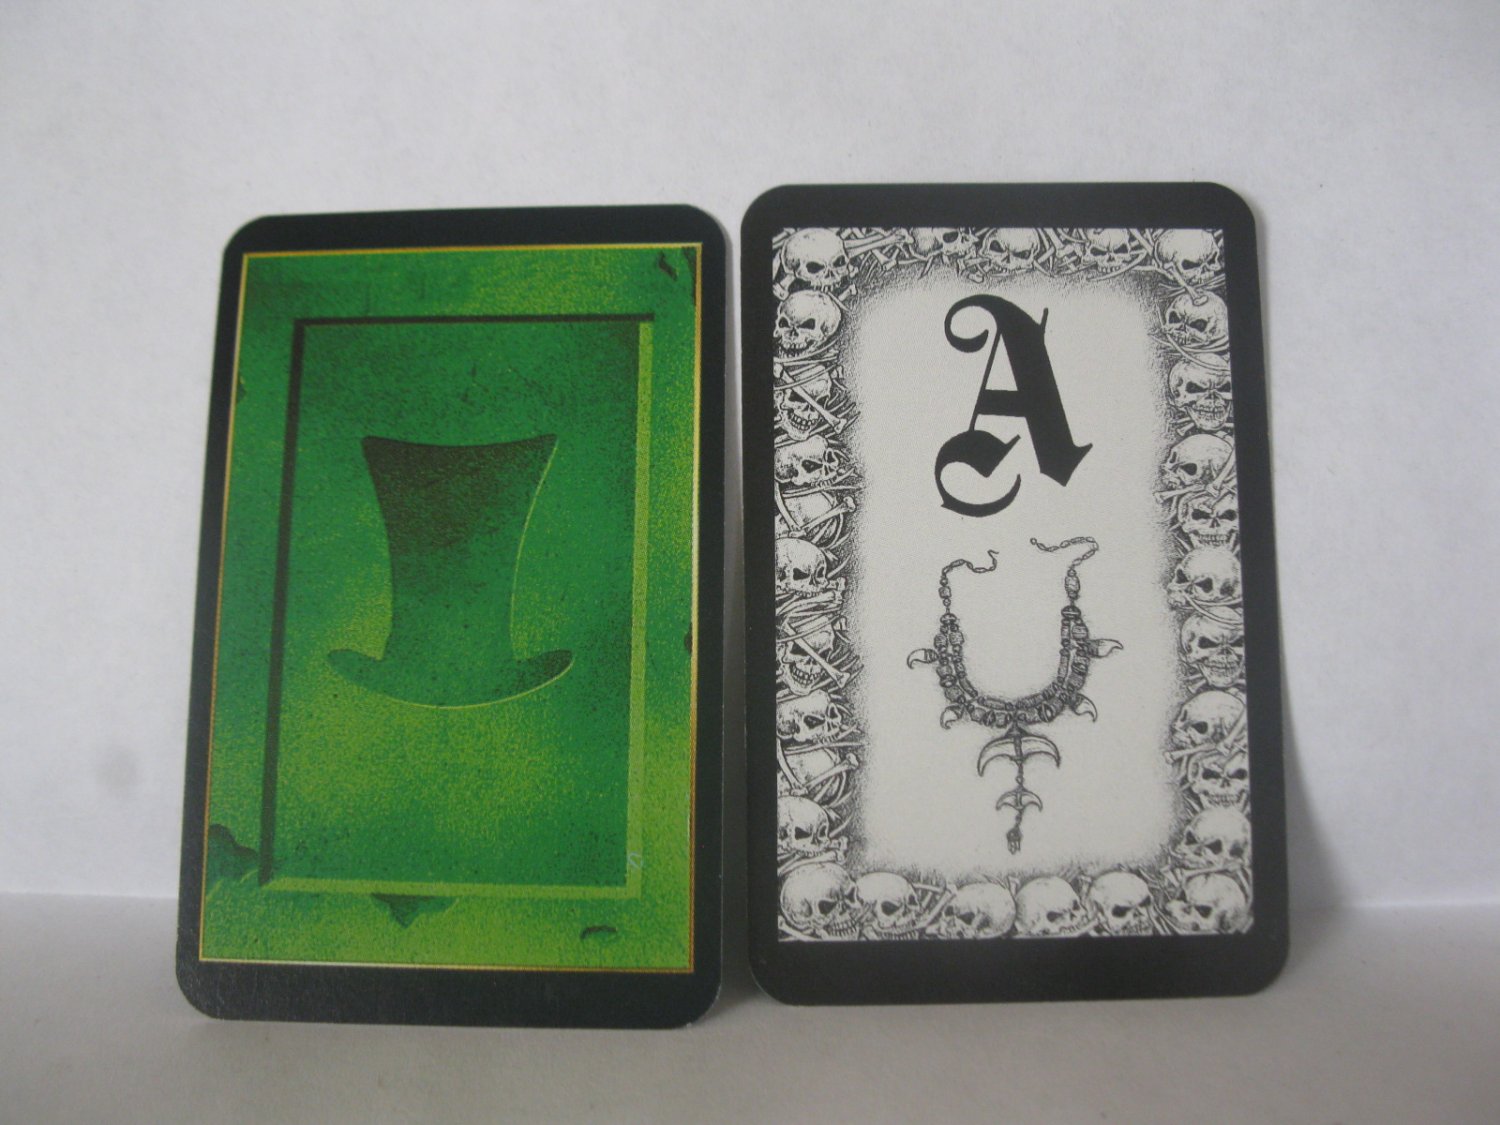 1995 Atmosfear Board Game Piece: Green Keystone card - A